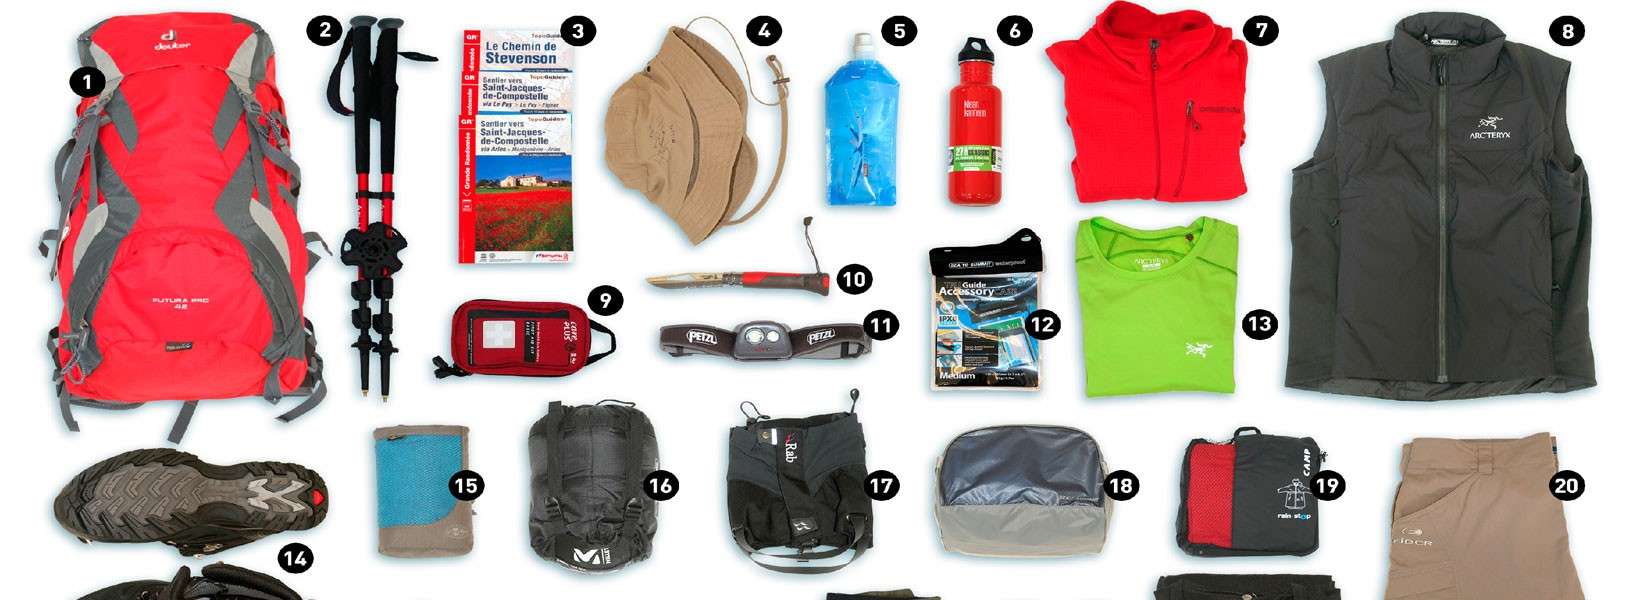 Trekking equipment/ packing lists Trekking gear for Nepal Trekking